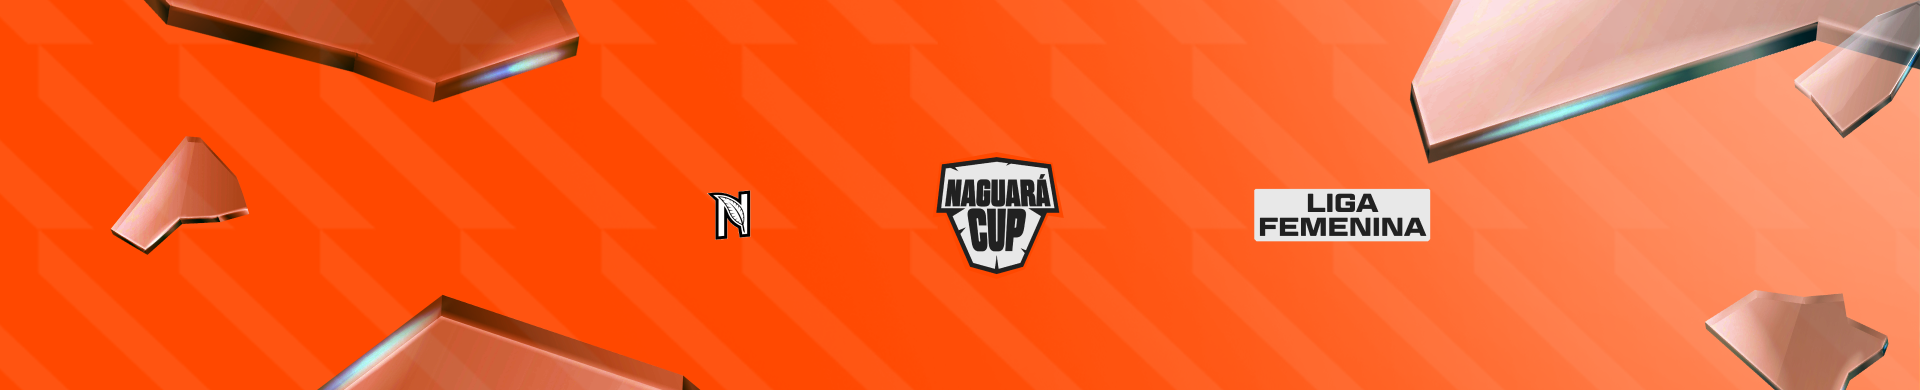 Naguará Cup FEM -  FreeFire - SAC